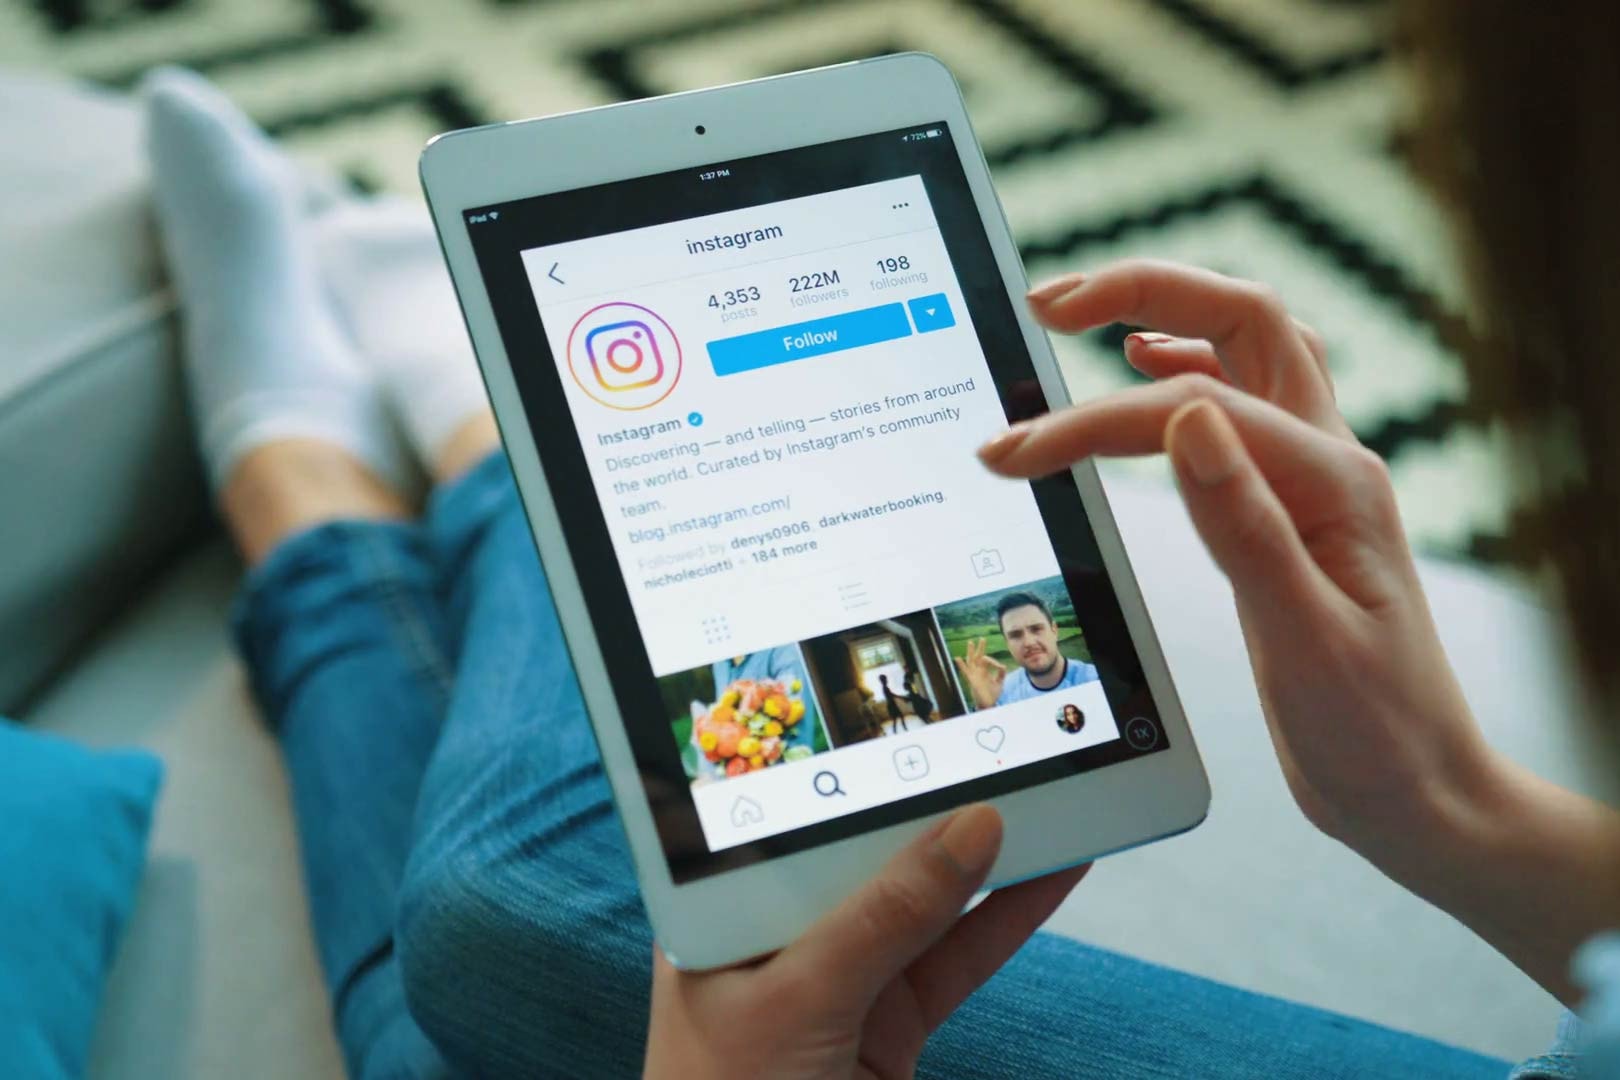 Instagram Social Media App Images iPad Tablet Apple Sharing